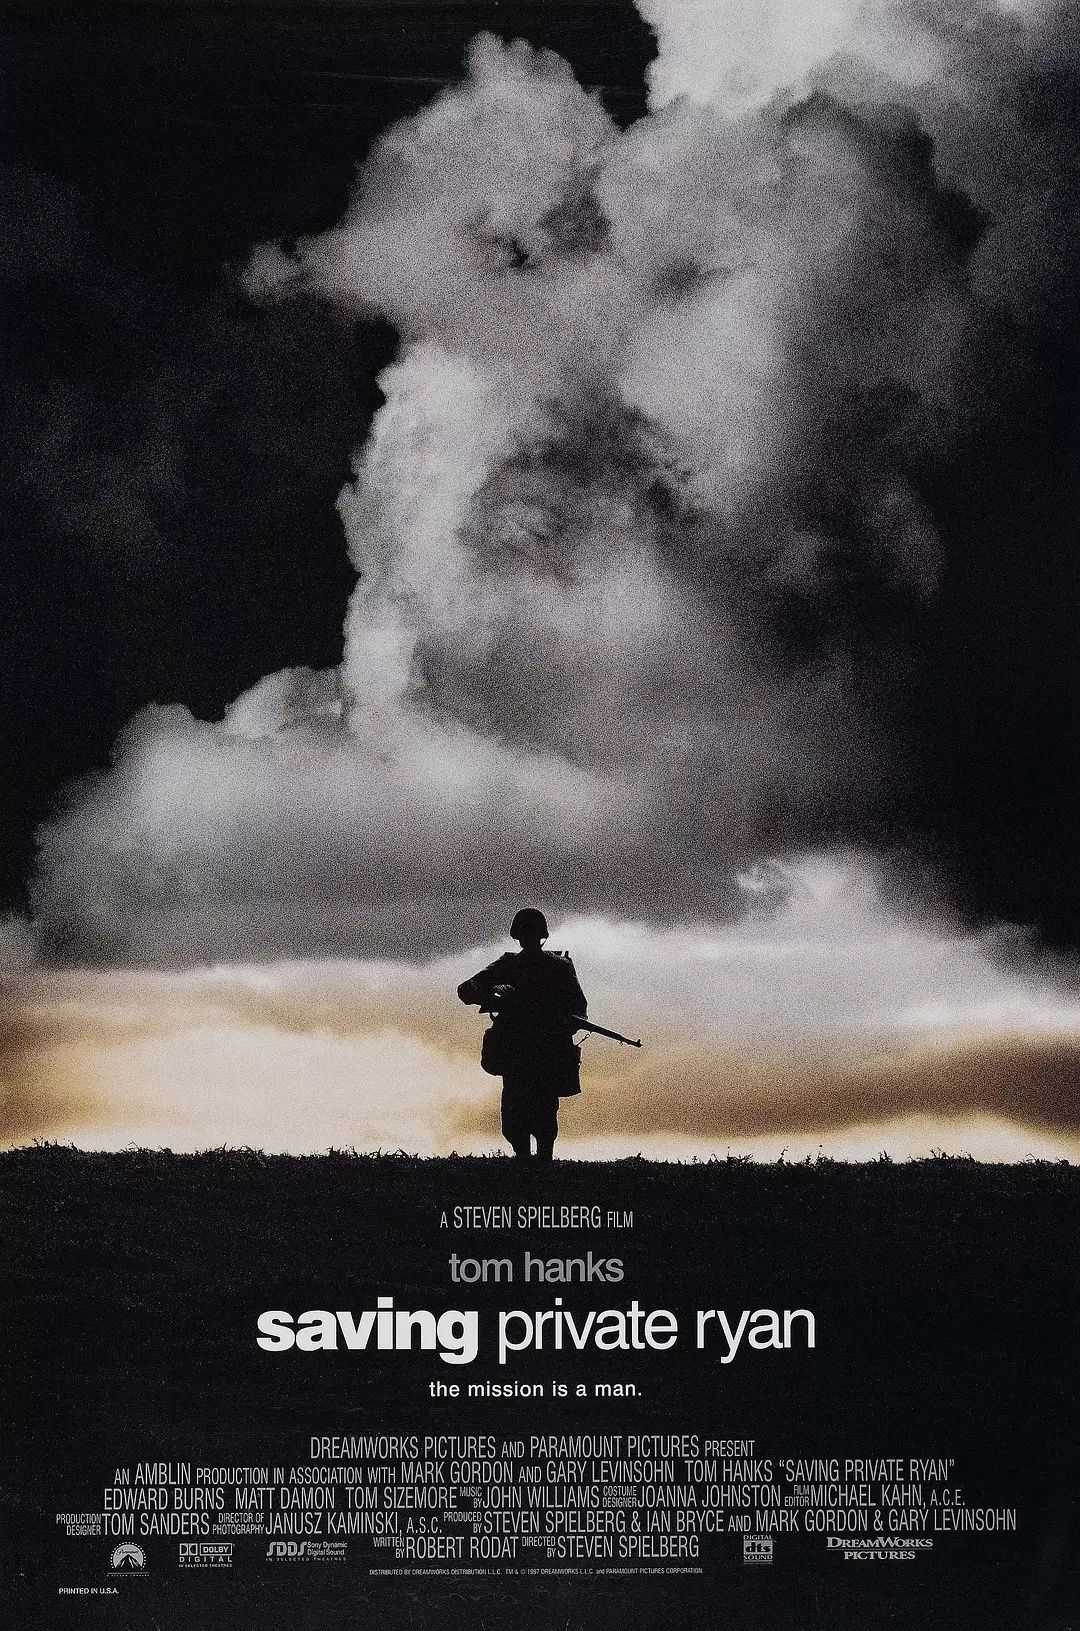 一:《拯救大兵瑞恩》 这部电影的故事不仅仅是拯救了一个大兵,妒乔